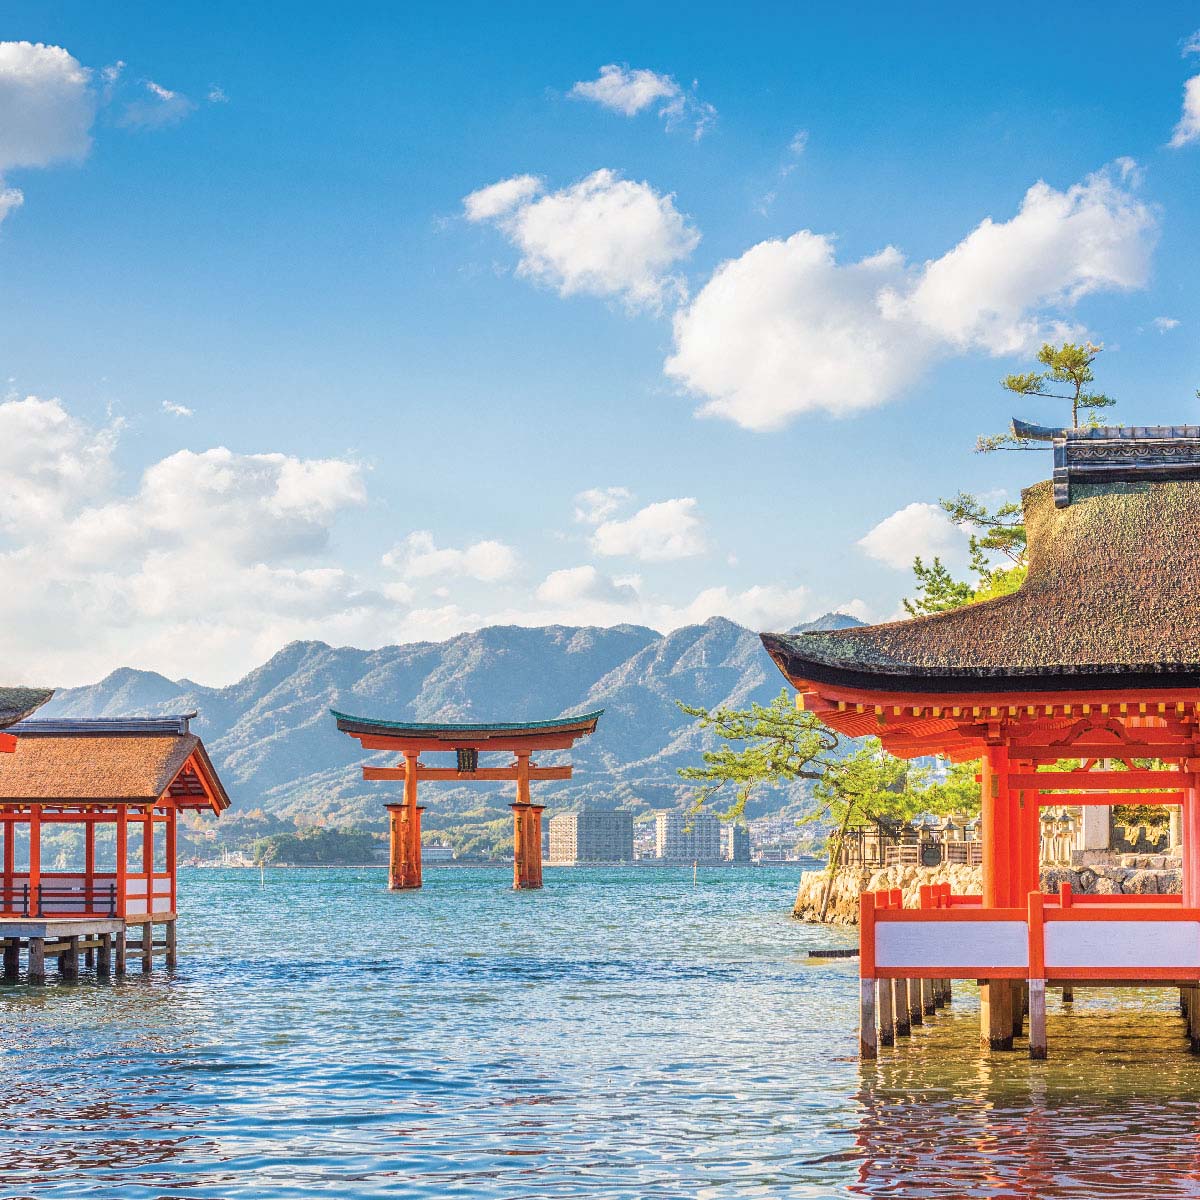 สถานที่ท่องเที่ยวในญี่ปุ่น Itsukushima-jinja Shrine ฮิโรชิม่า